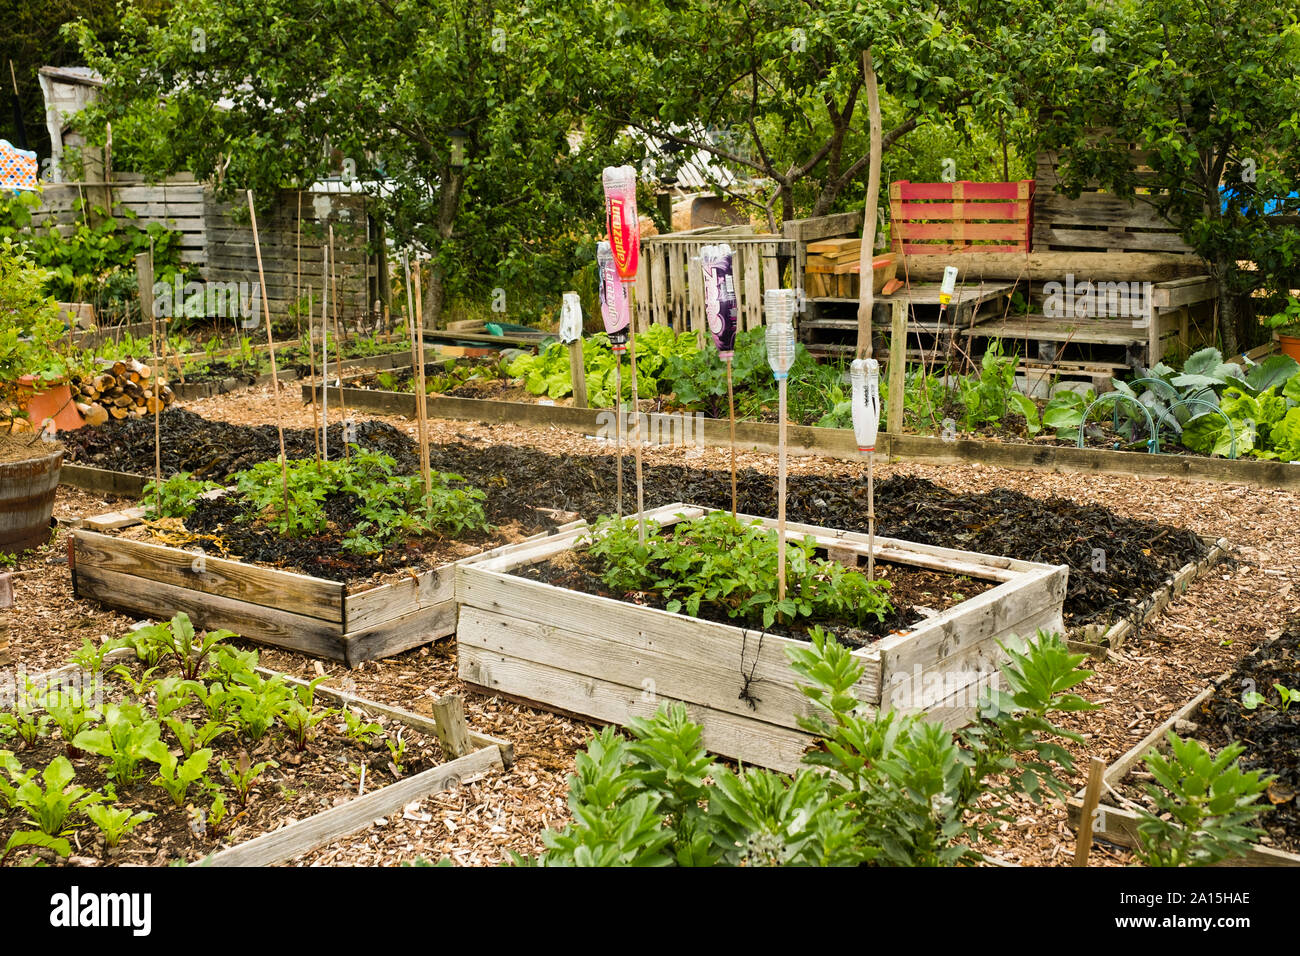 Jardinage allotissement au Royaume-Uni - les légumes poussant dans des lits surélevés Banque D'Images